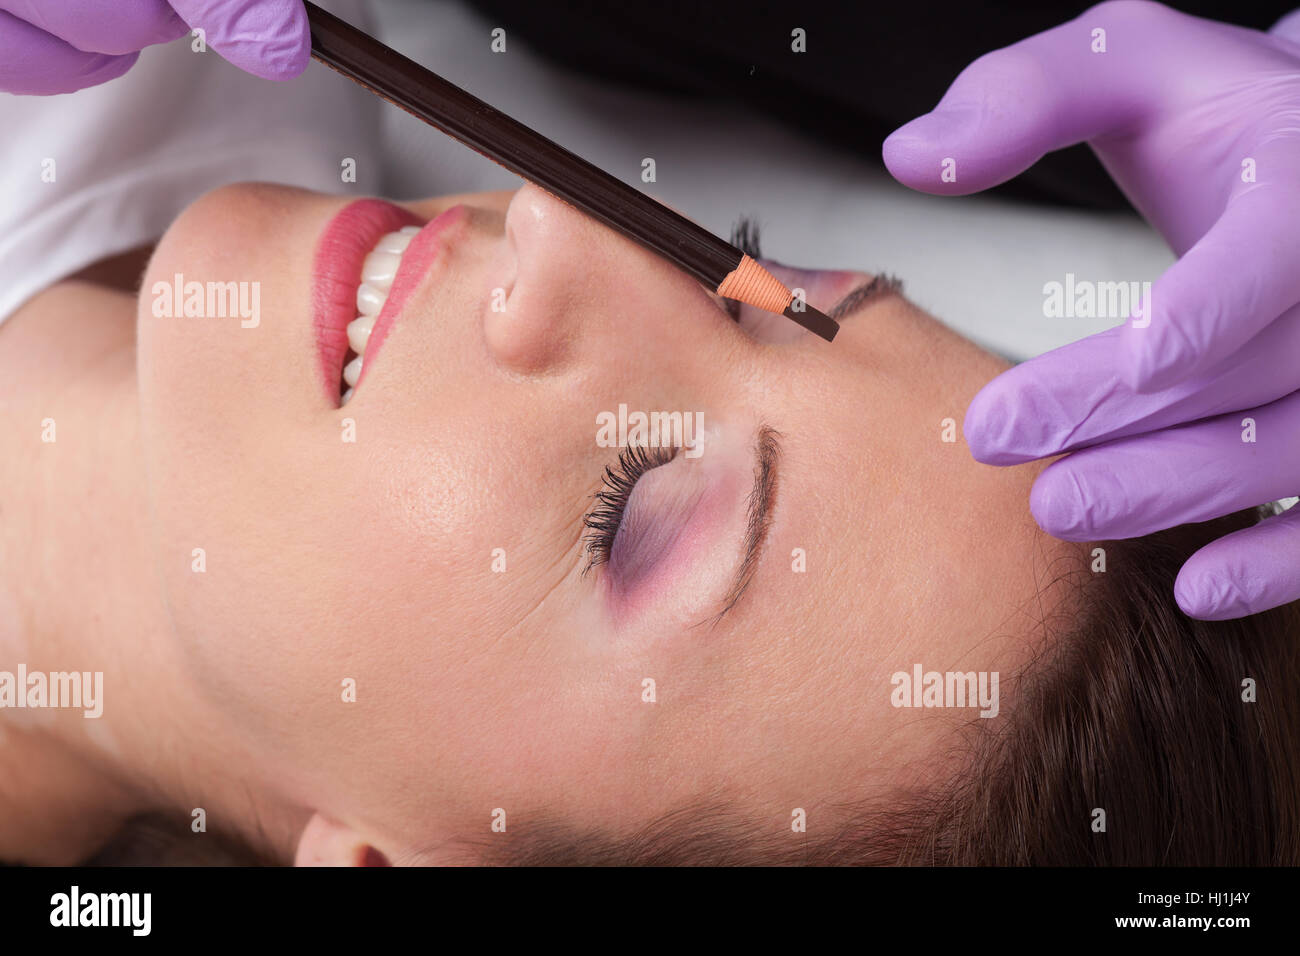 Cosmetologo preparazione di una donna per le sopracciglia permanente make up Foto Stock